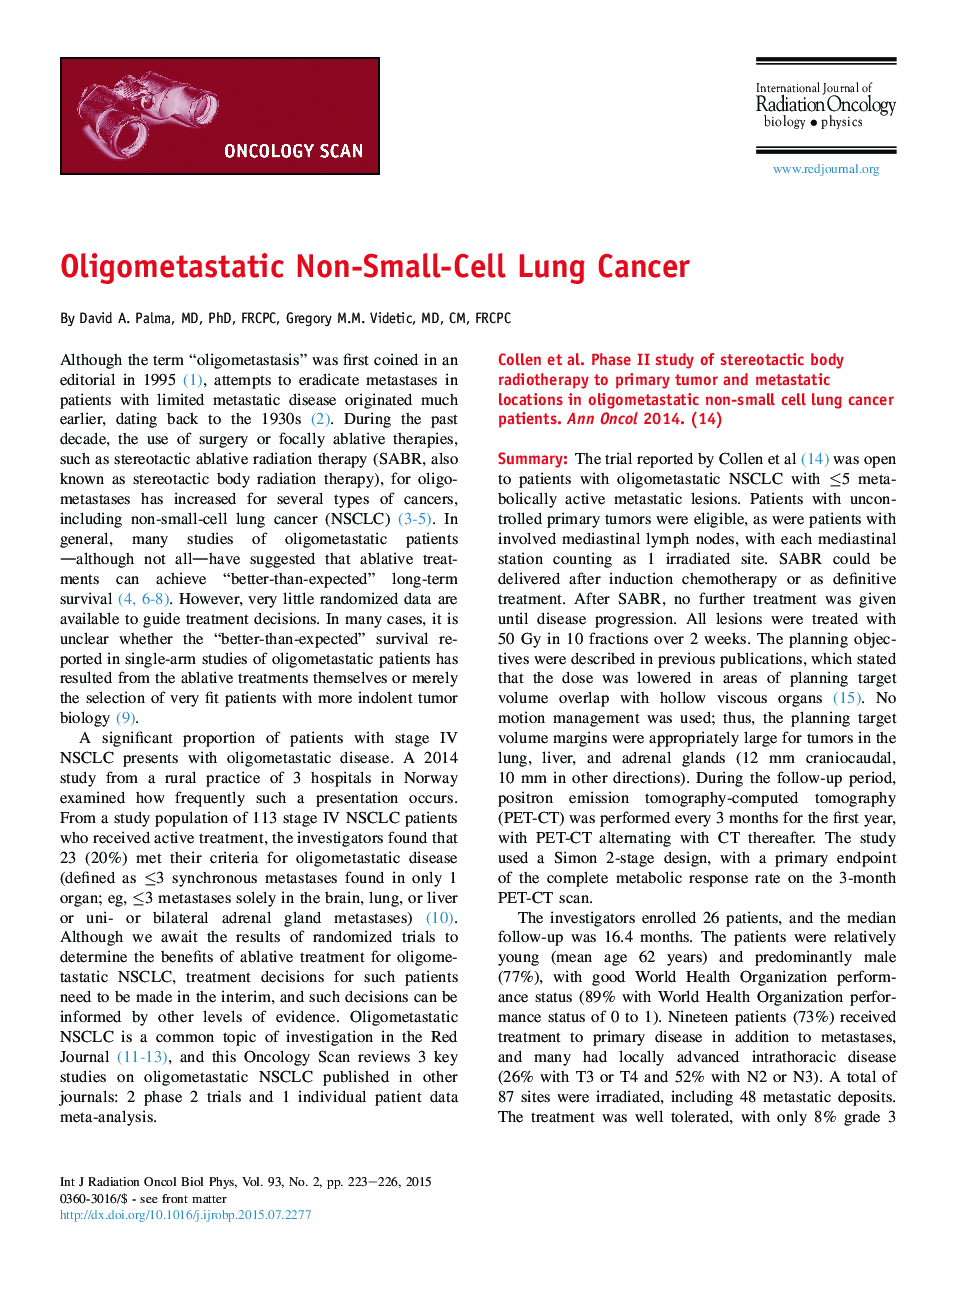 Oligometastatic Non-Small-Cell Lung Cancer